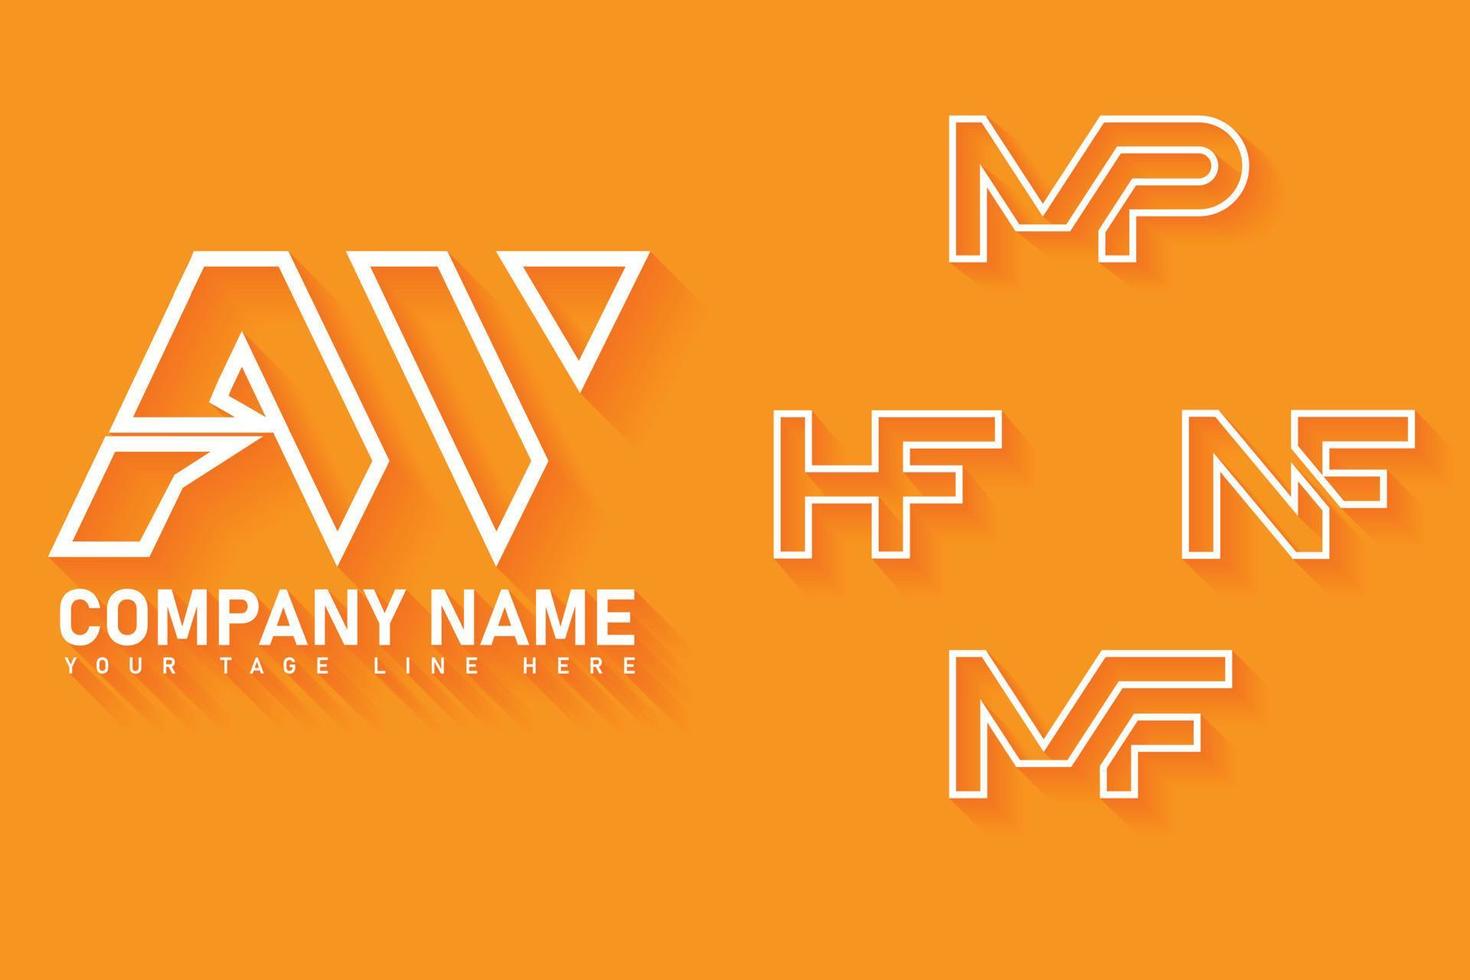 aw, mf, mp, nf, ensemble de logos de contour hf vecteur